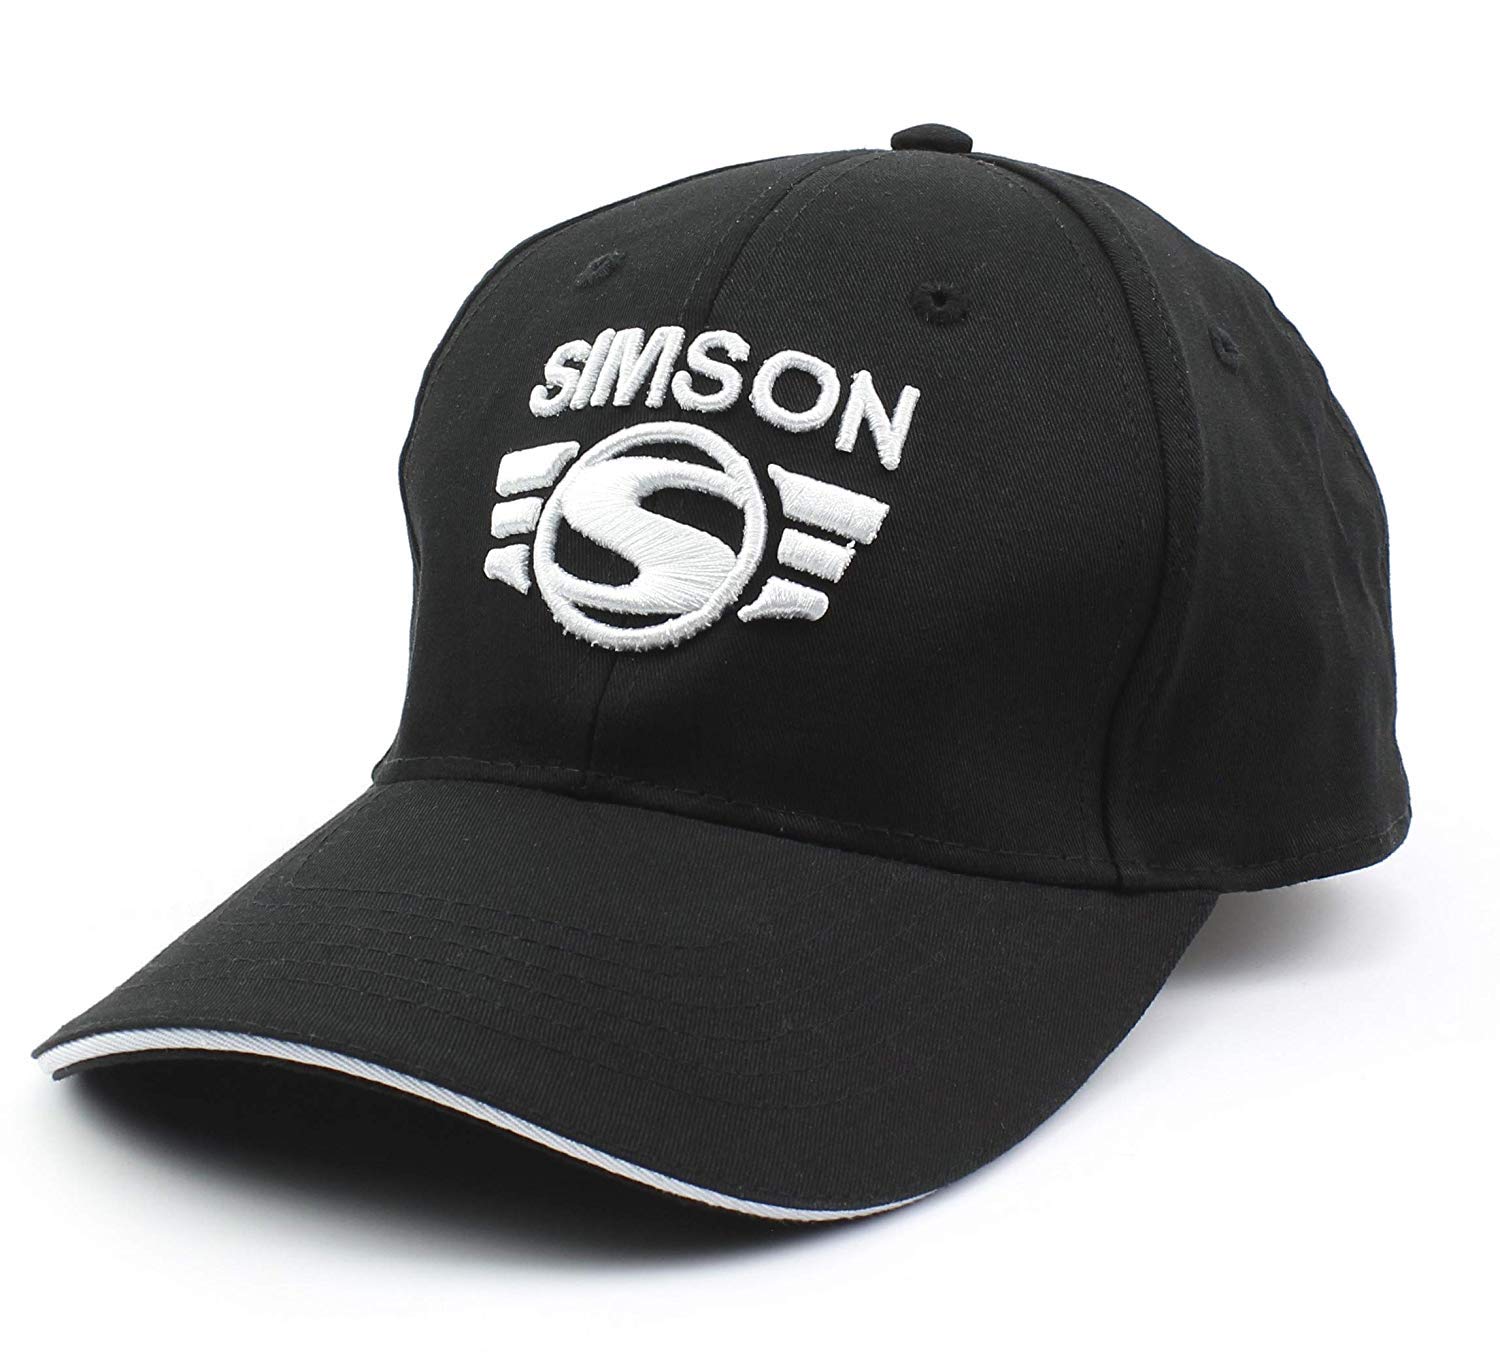 BISOMO Simson Base Cap schwarz weiß mit Simson Logo